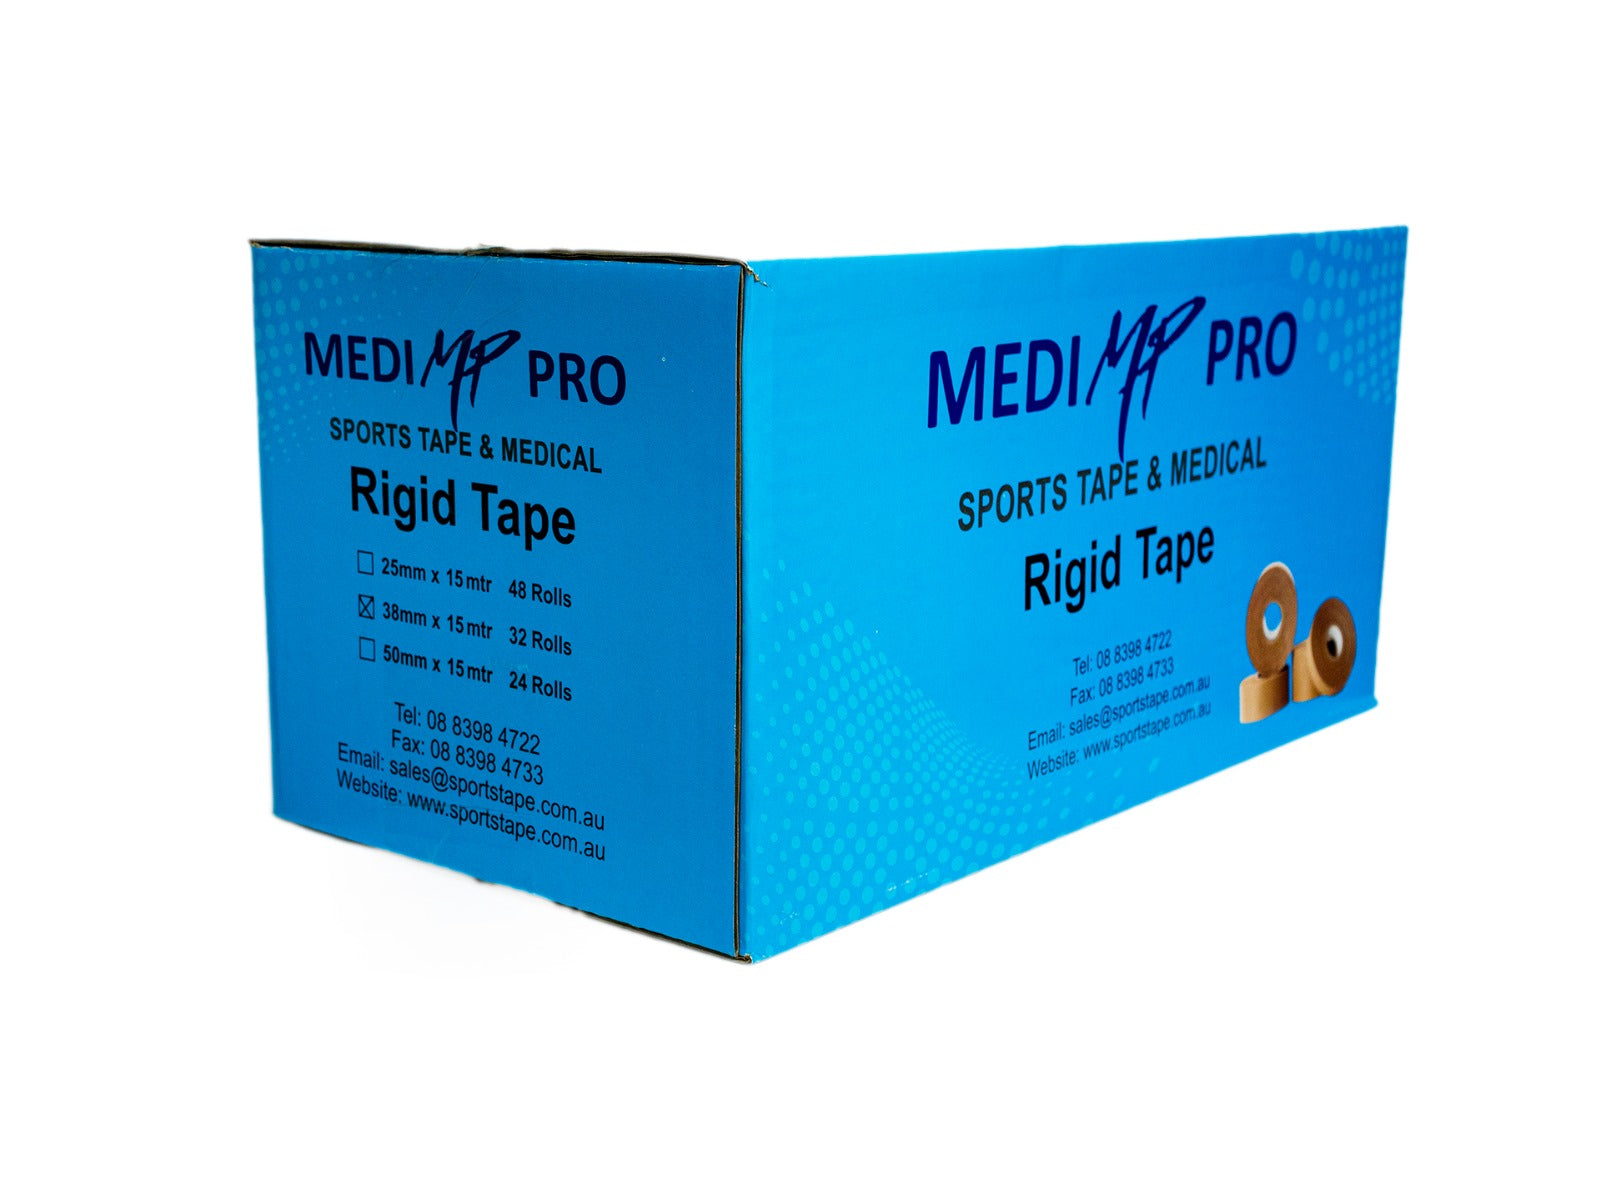 Professional Rigid Tape 38mm x 15m MediPro Sports Tape